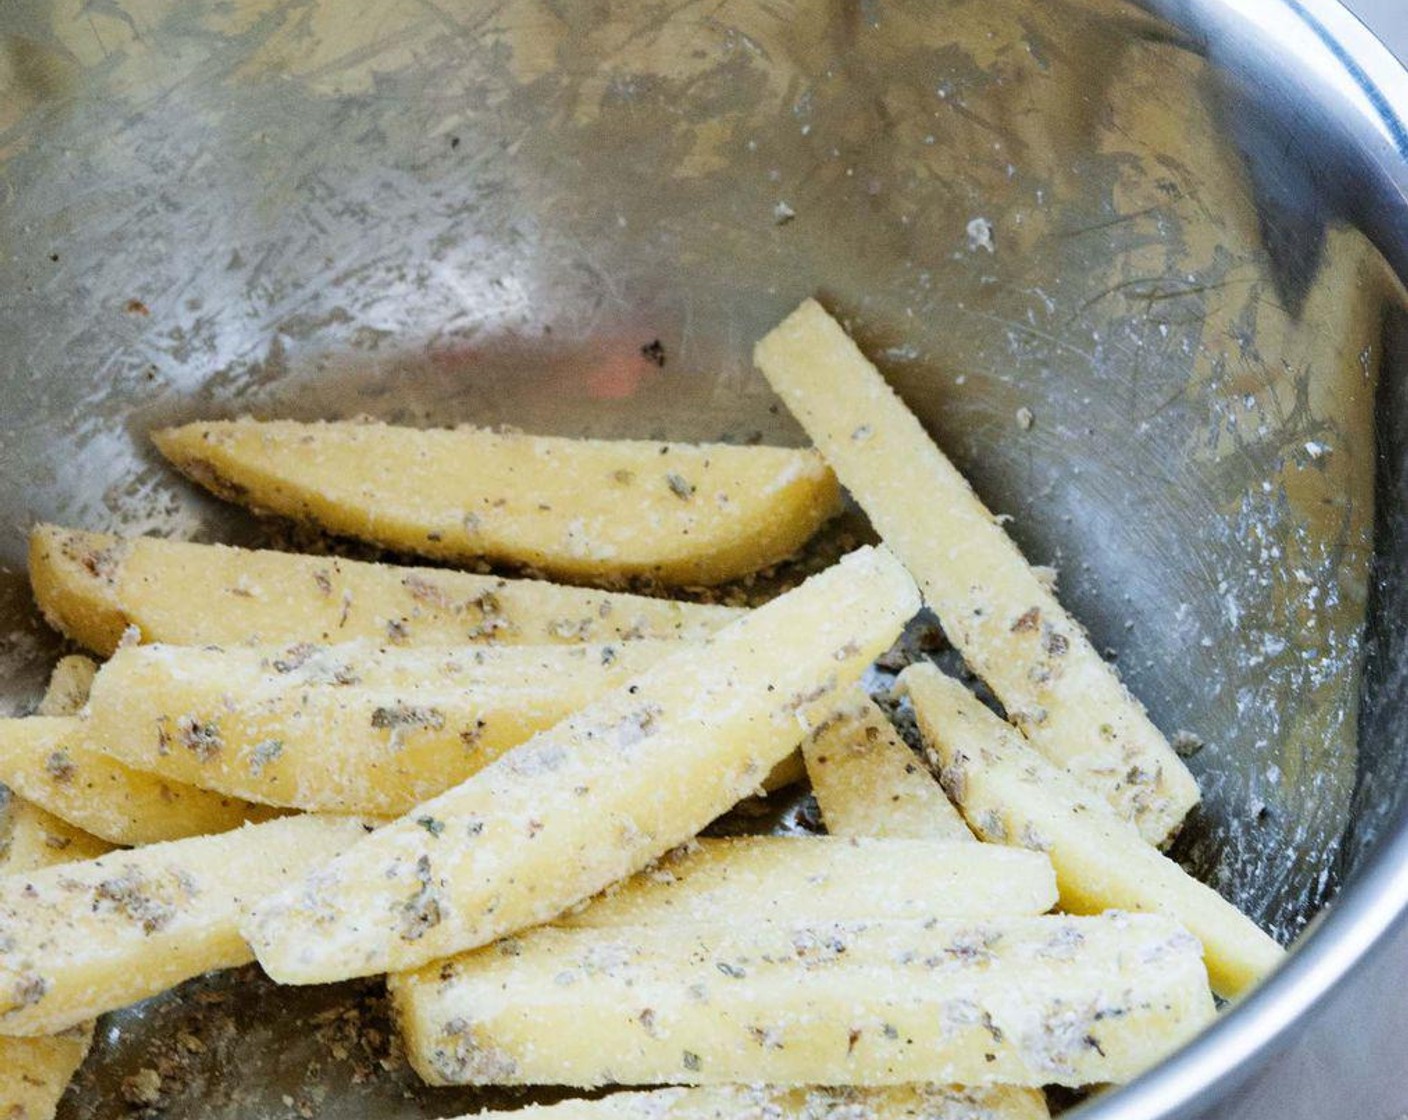 Schritt 4 Für die Kartoffelecken: Kartoffeln (2) waschen, schälen und schneiden. Mit Kräutern (wenig), geschmolzenem Kokosöl (2 Esslöffel), Speisestärke (2 Esslöffel), Salz (wenig) und Pfeffer (wenig) mischen.